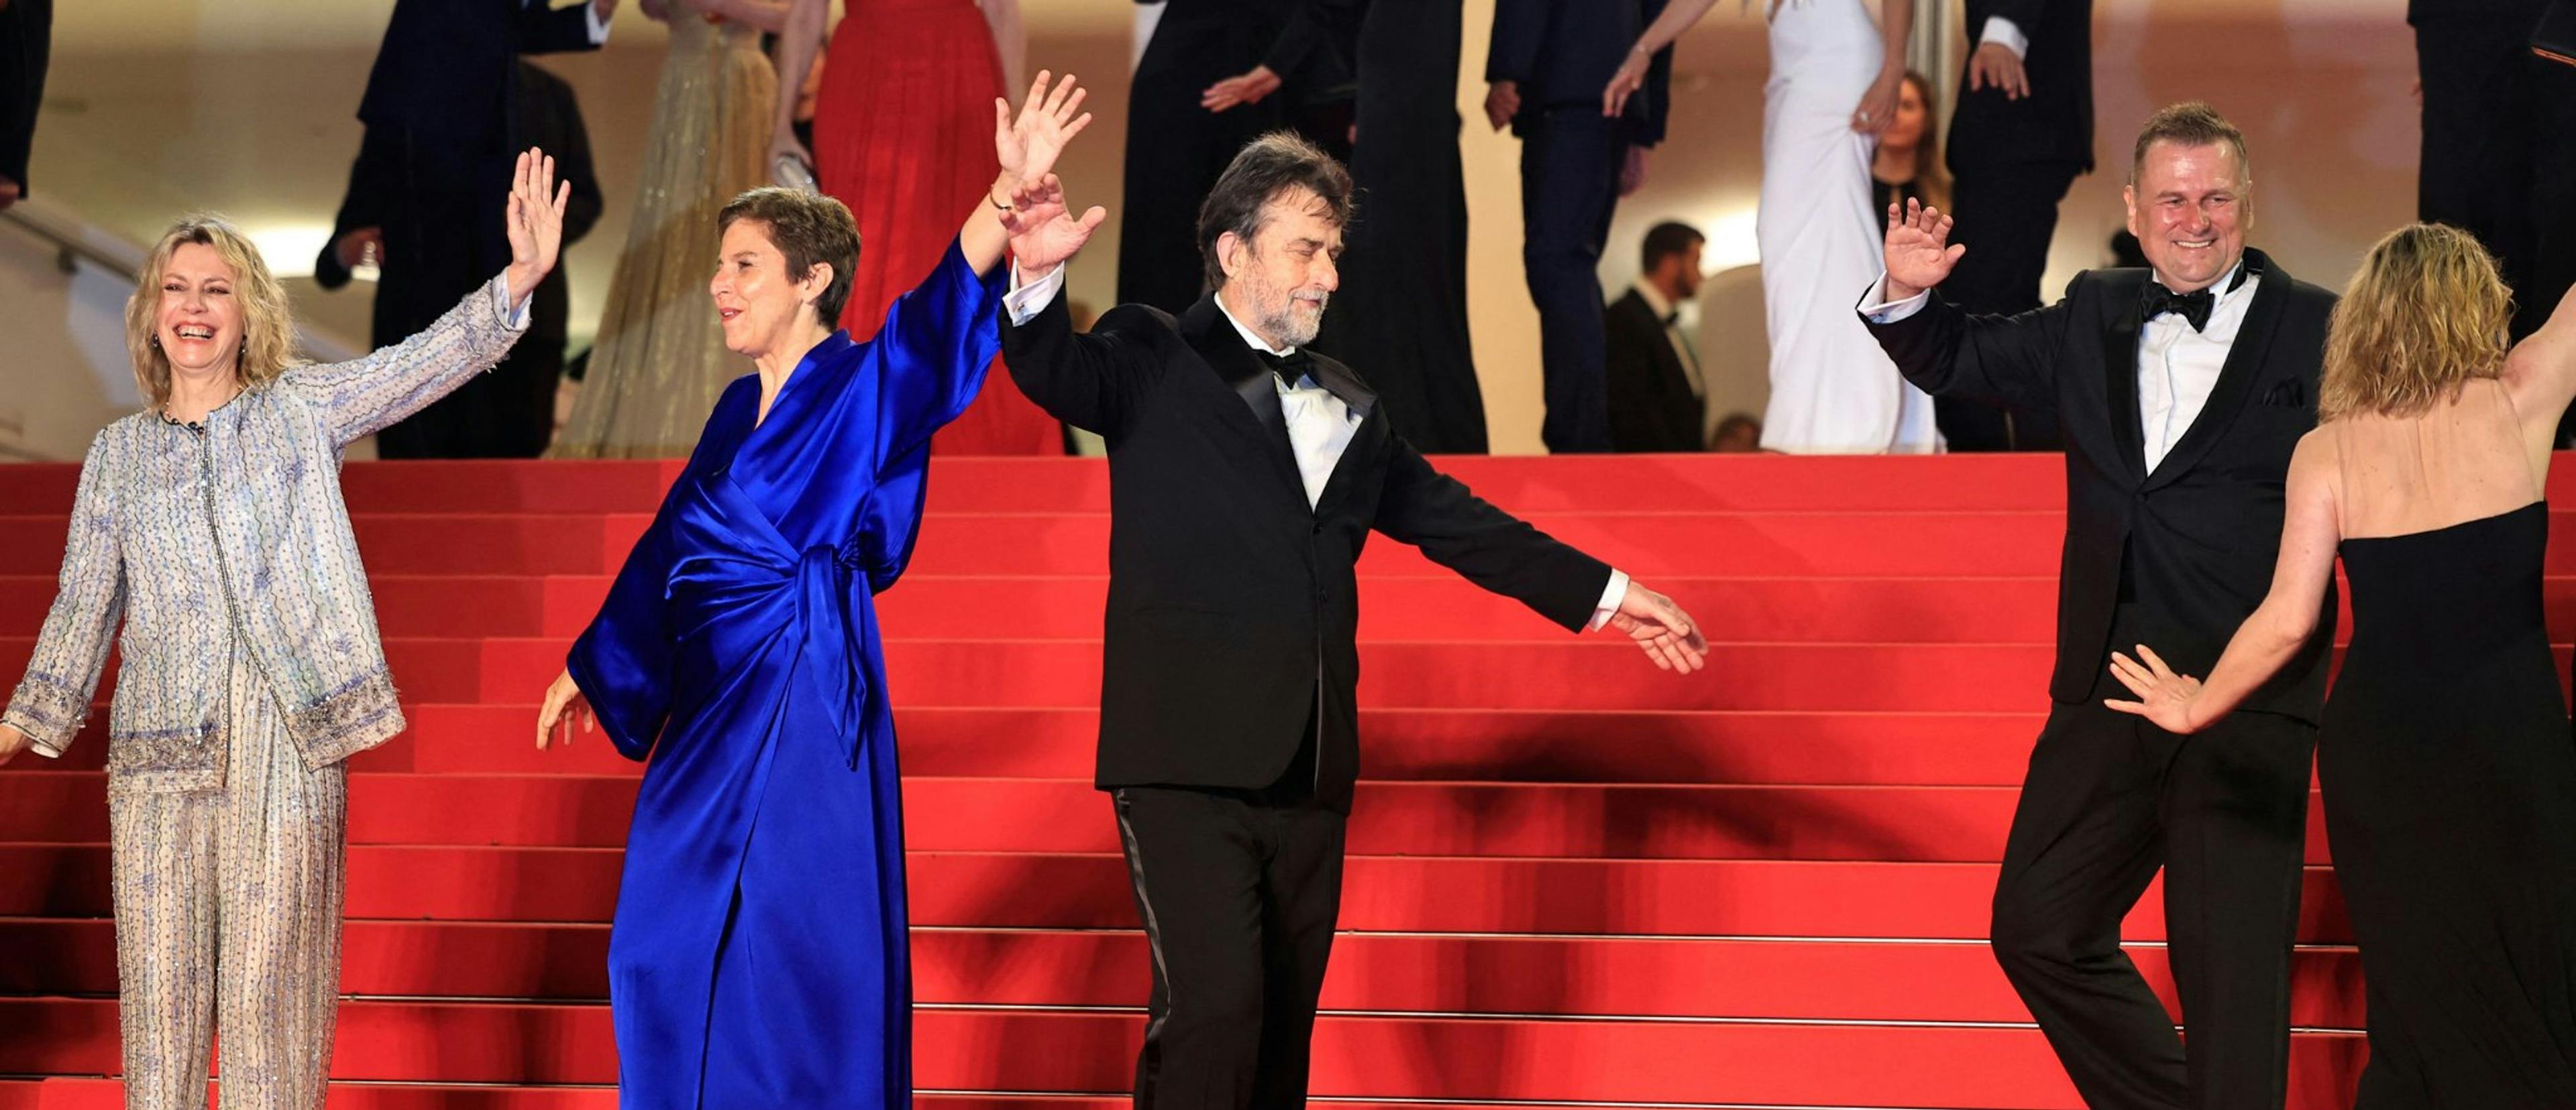 El director Nanni Moretti, la actriz Margherita Buy y el equipo de 'El sol del futuro' bailan en la escalinata del Festival de Cannes